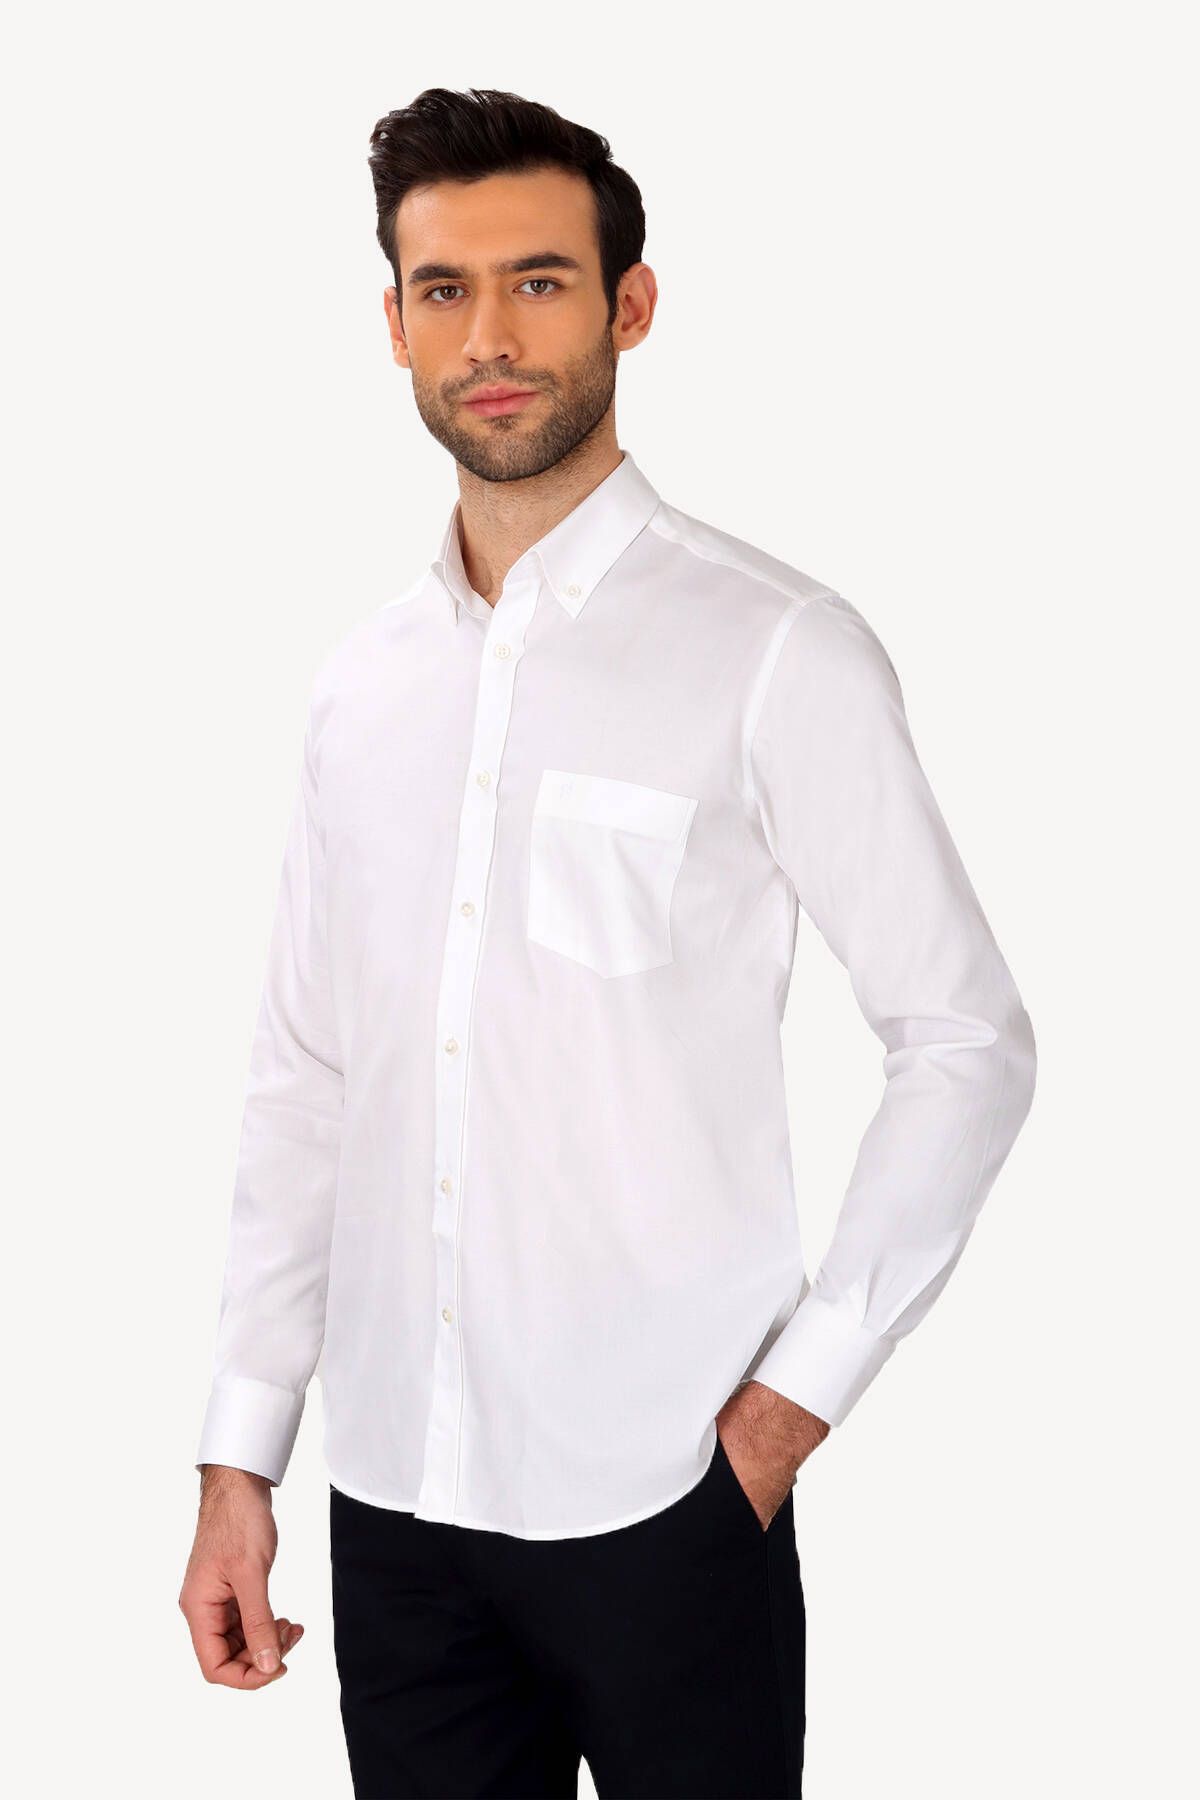 YSF Erkek Beyaz Uzun Kol Klasik Yaka Düğmeli Gömlek